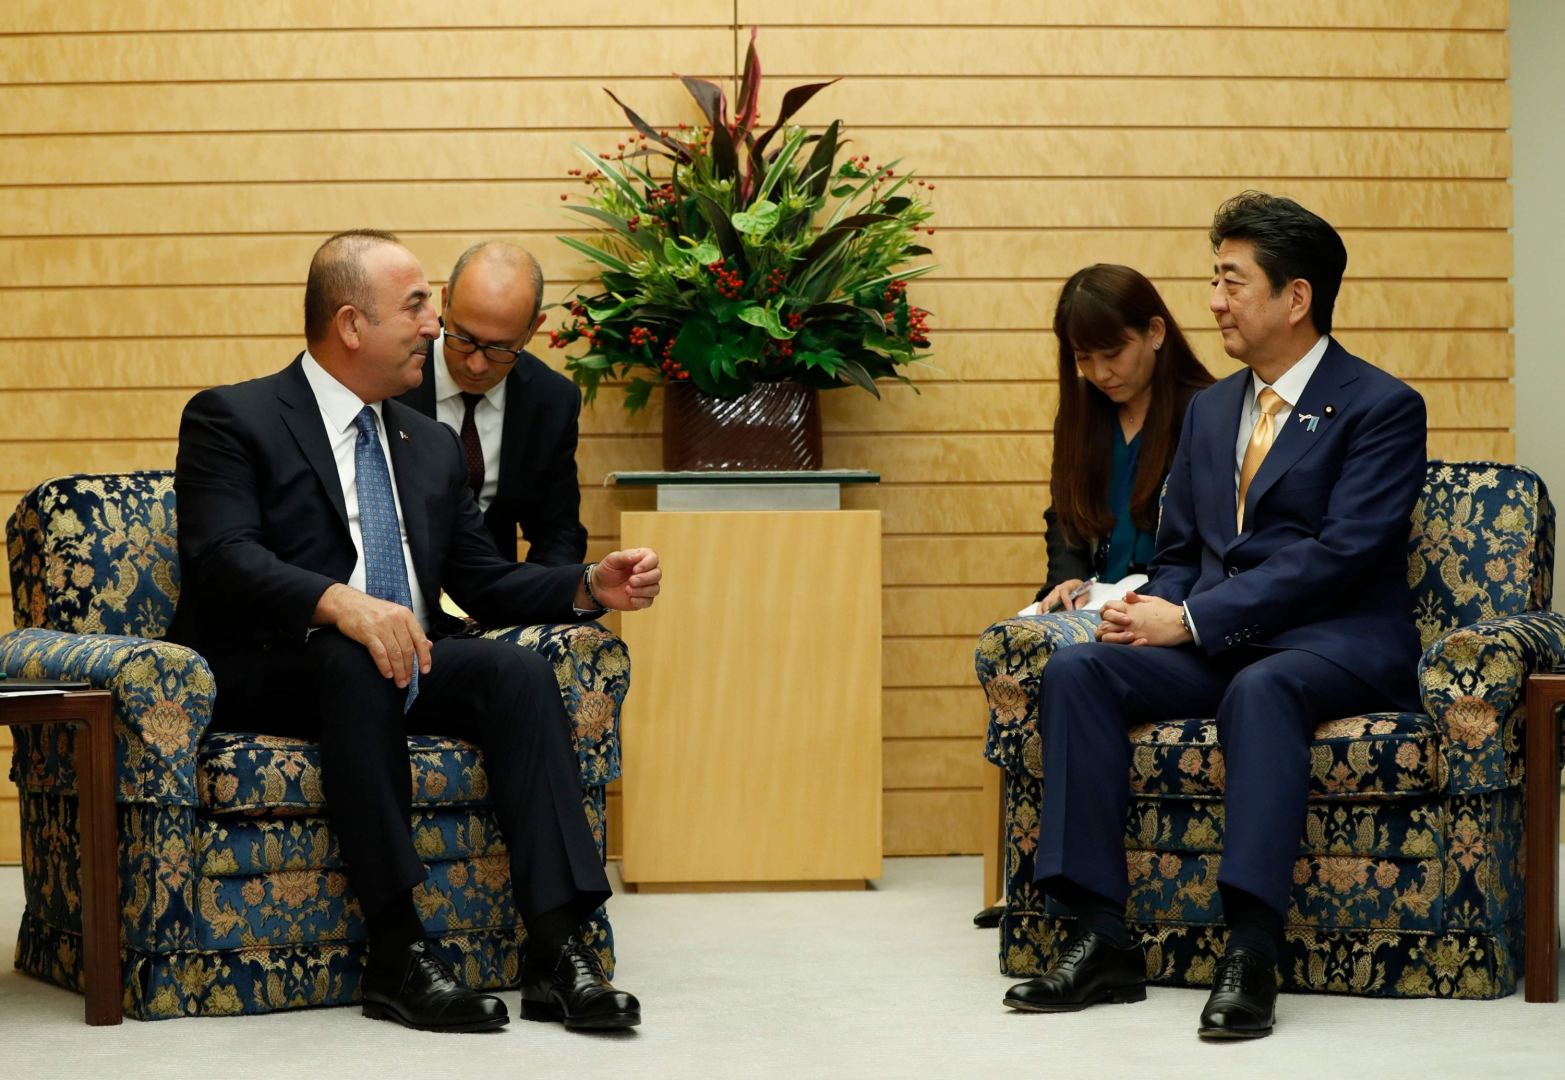 Turkey's FM Çavuşoğlu regrets Japan PM’s resignation, applauds his contribution to diplomatic ties